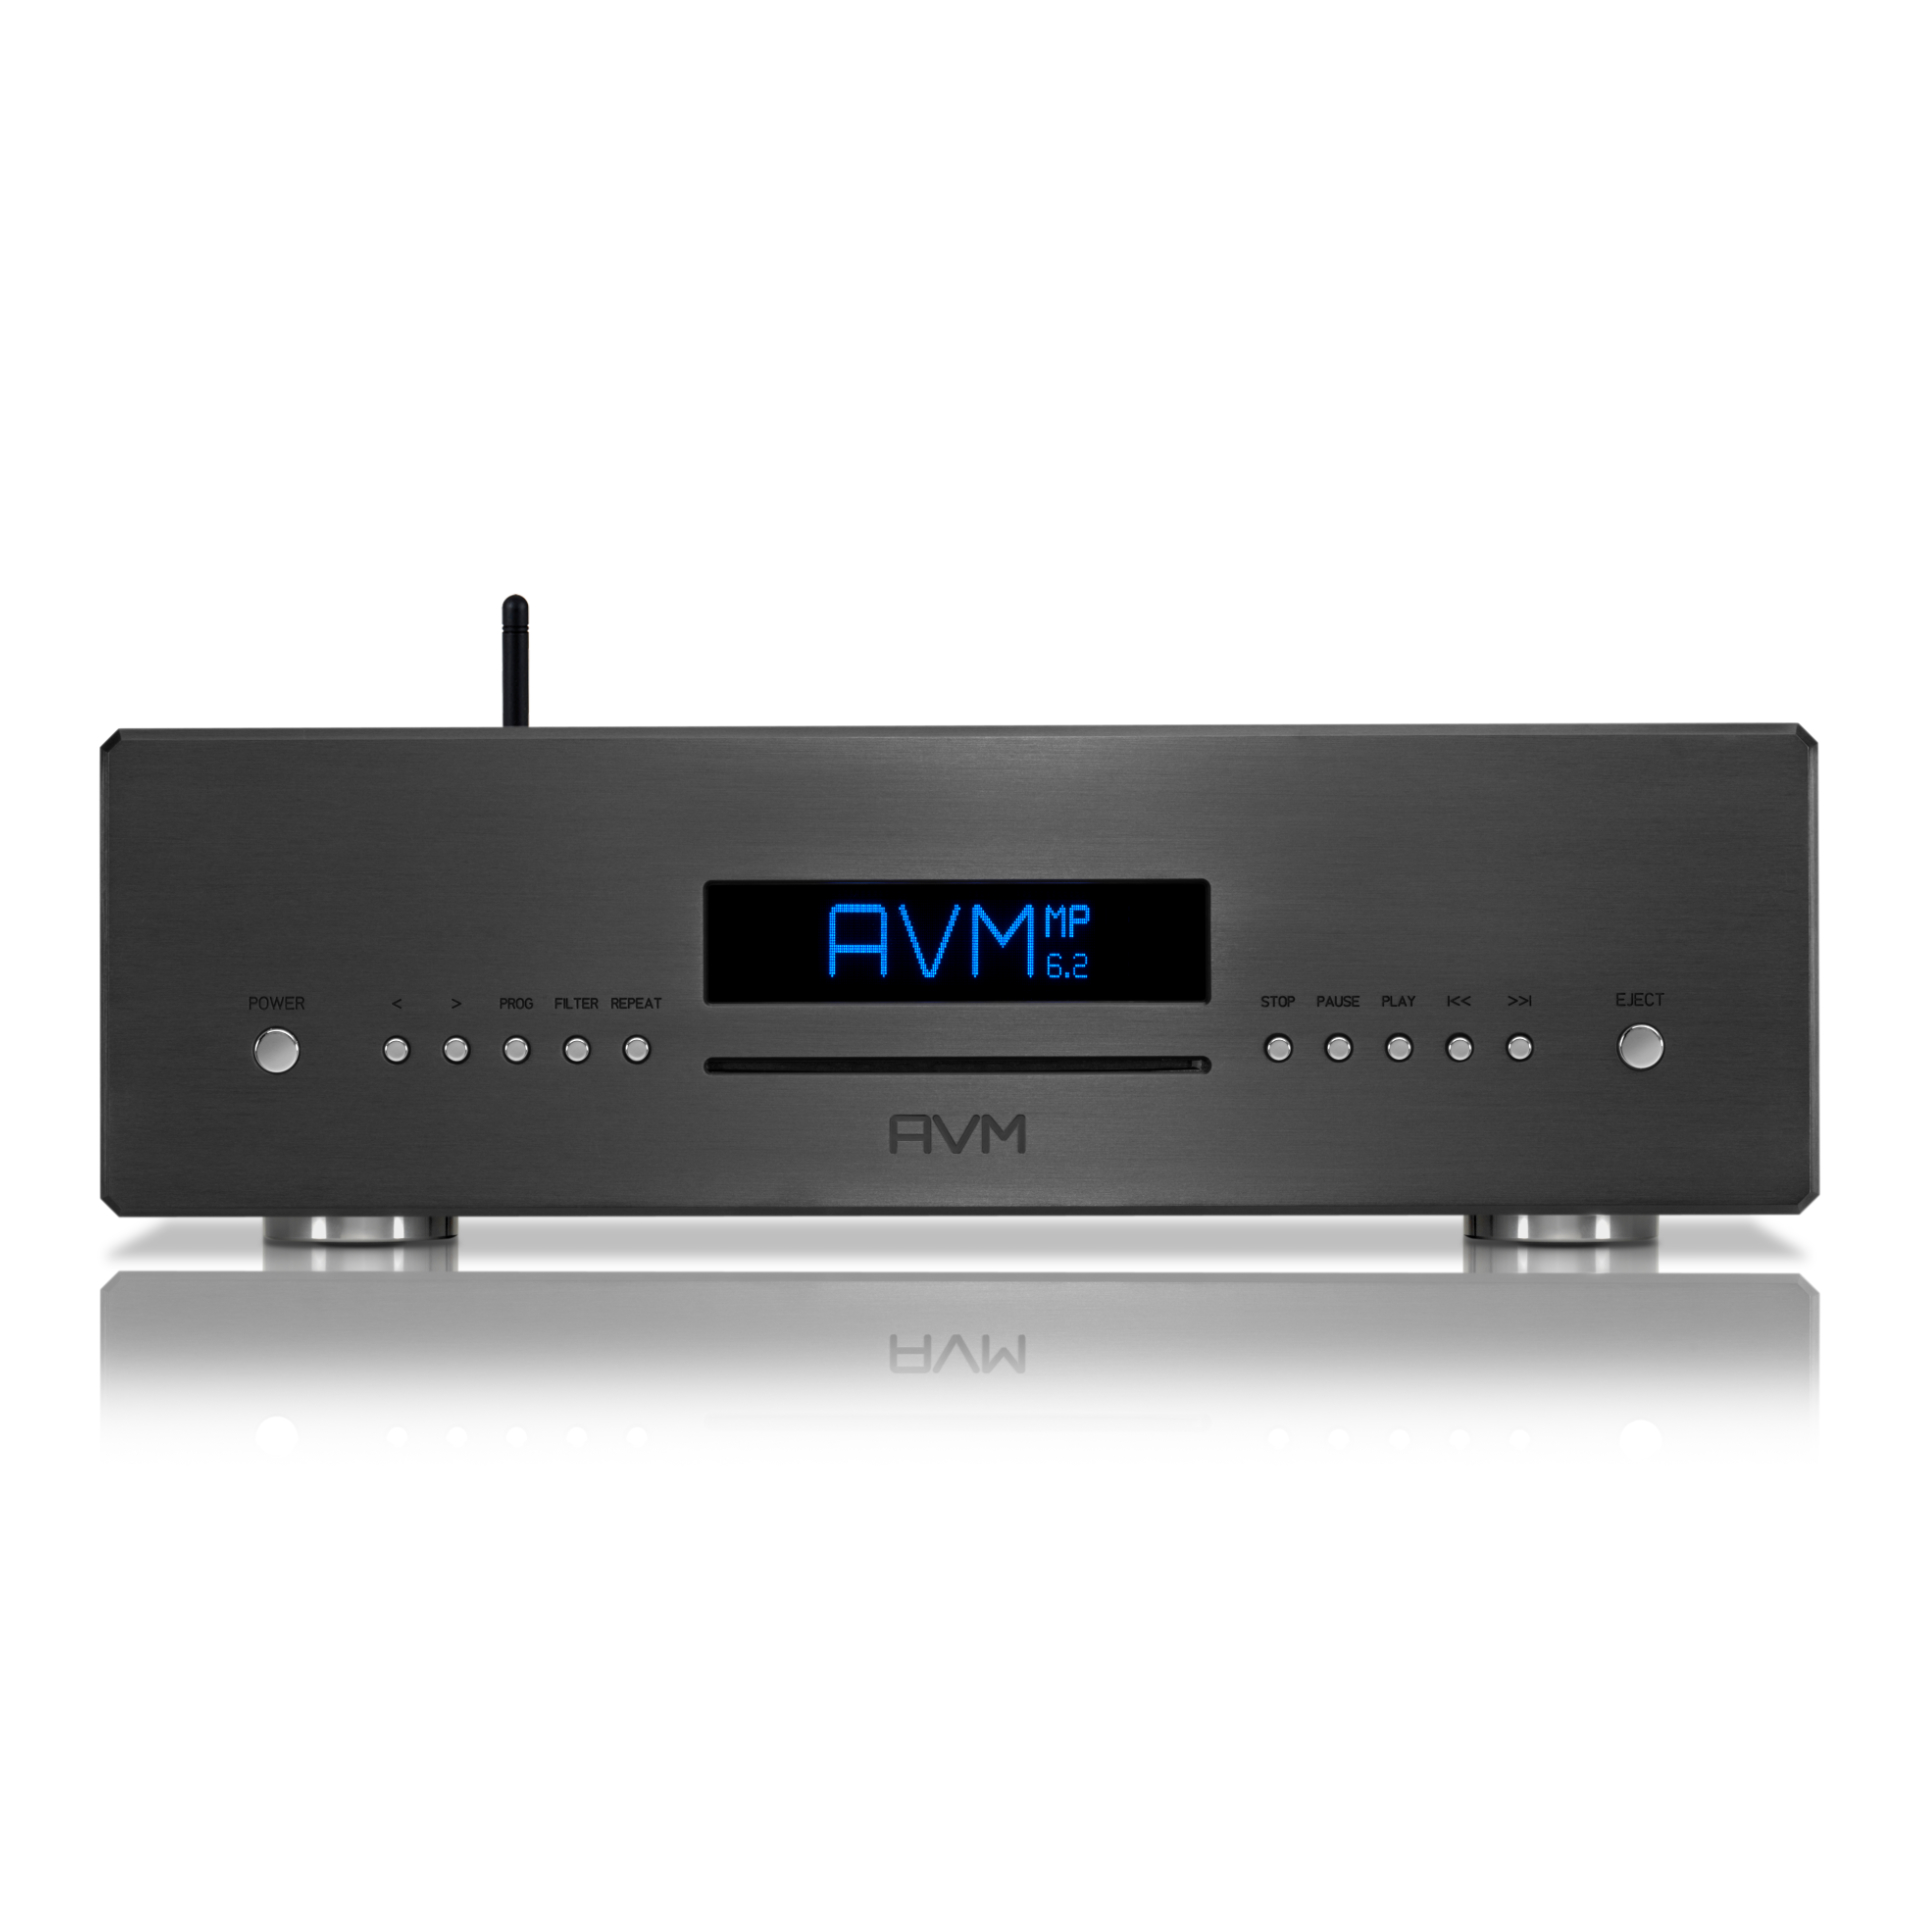 AVM Audio Ovation MP 6.3